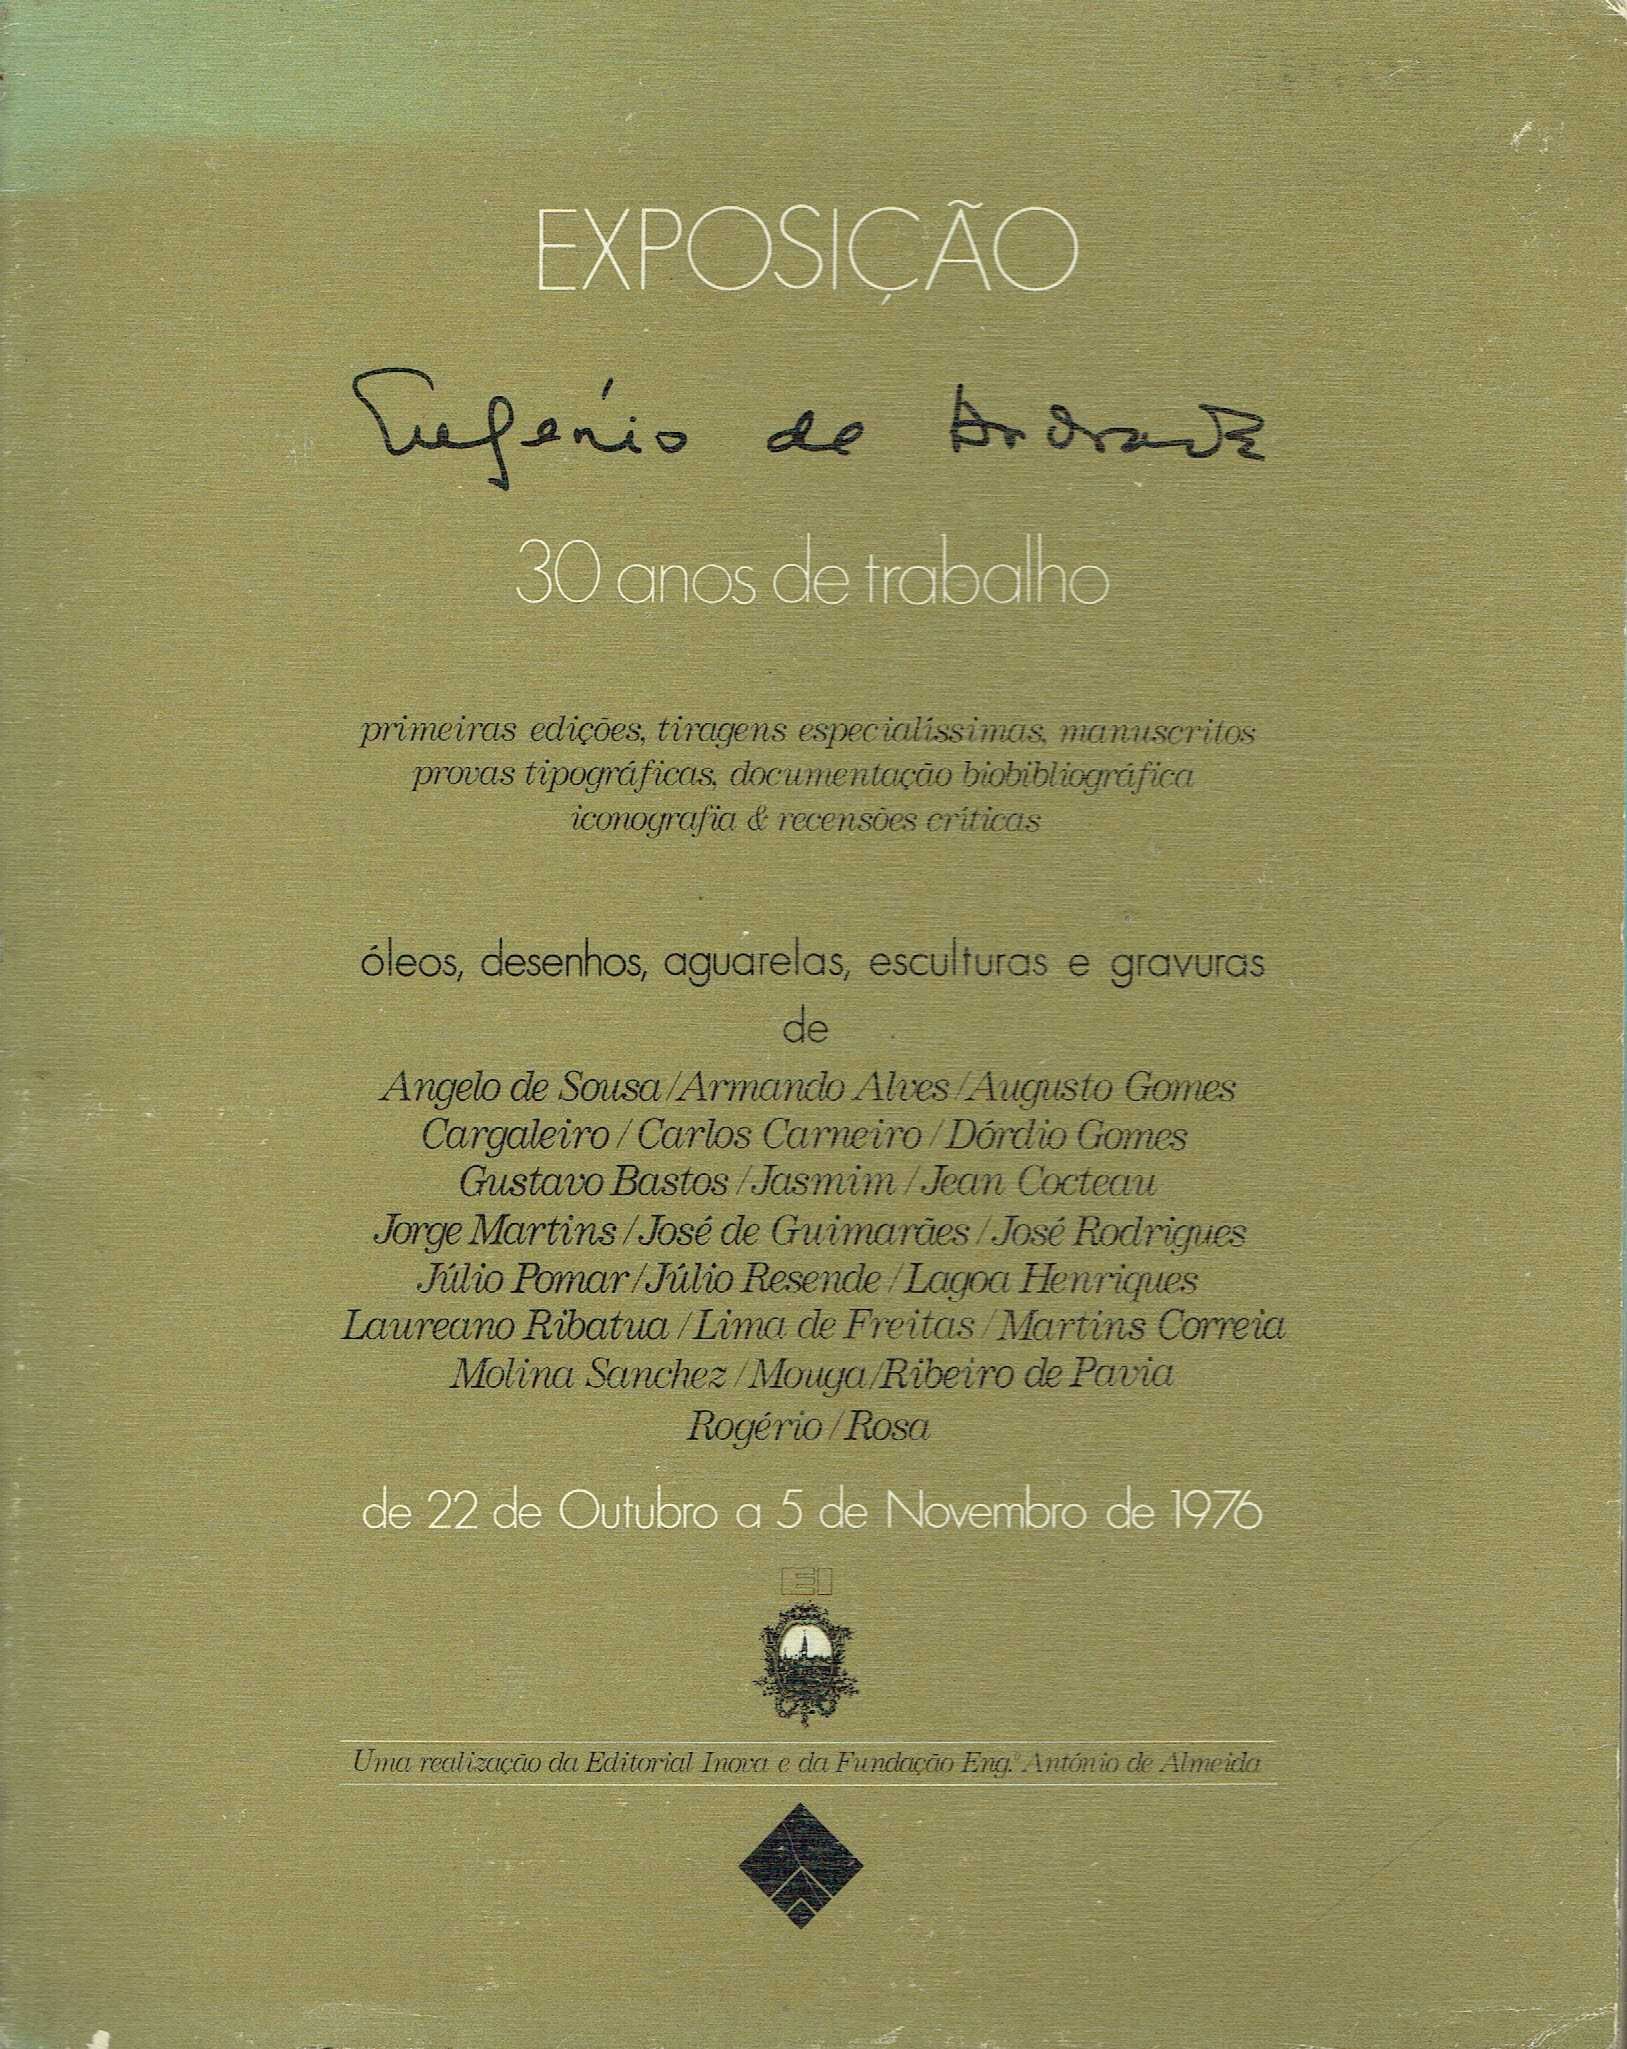 7294

Exposição Eugénio de Andrade 30 anos de trabalho 1976